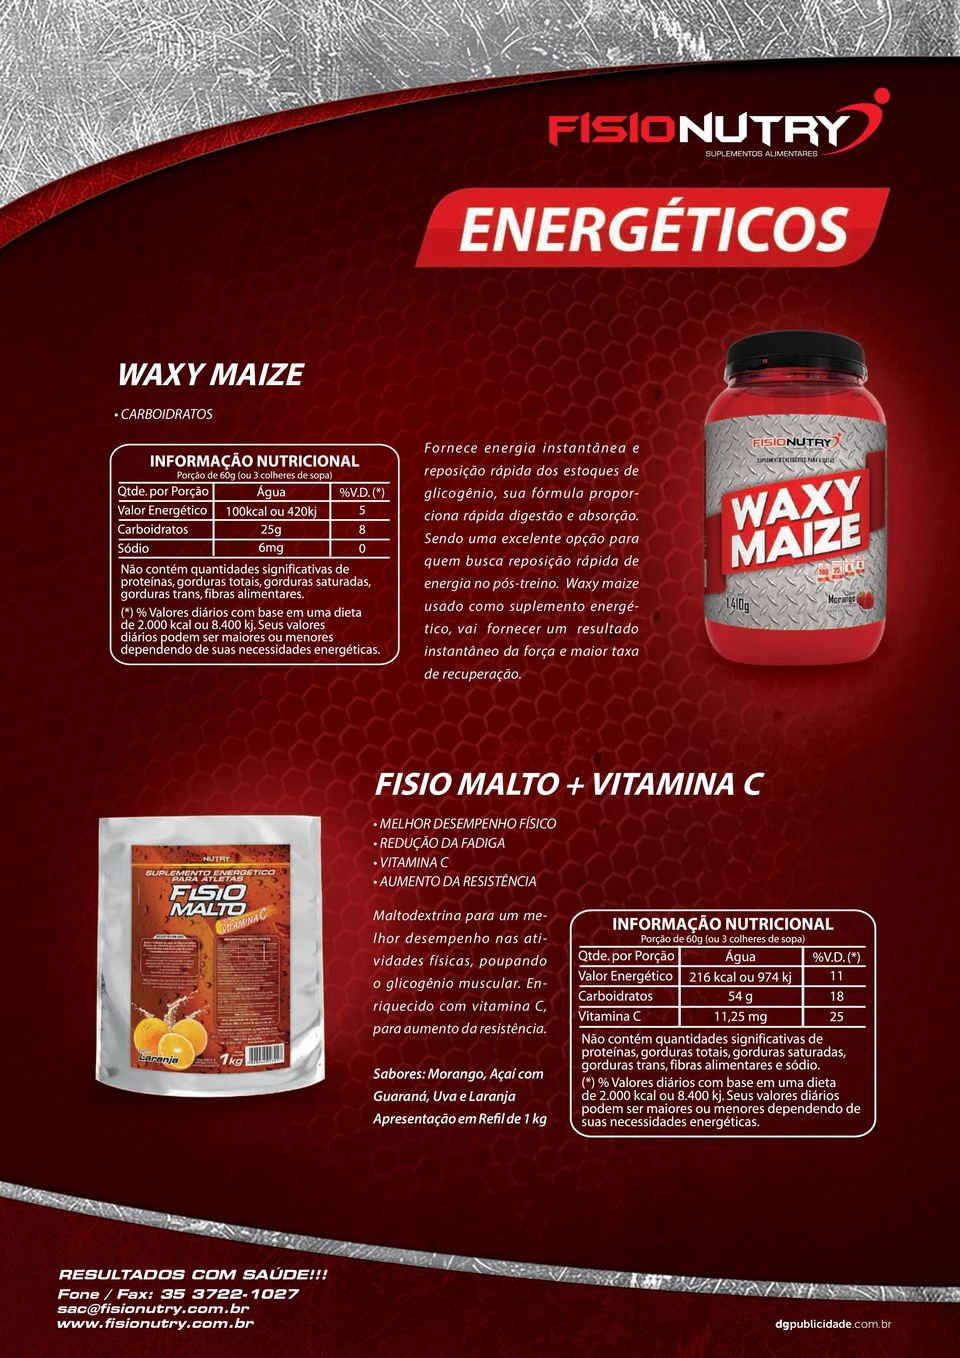 Waxy maize usado como suplemento energético, vai fornecer um resultado instantâneo da força e maior taxa de recuperação.